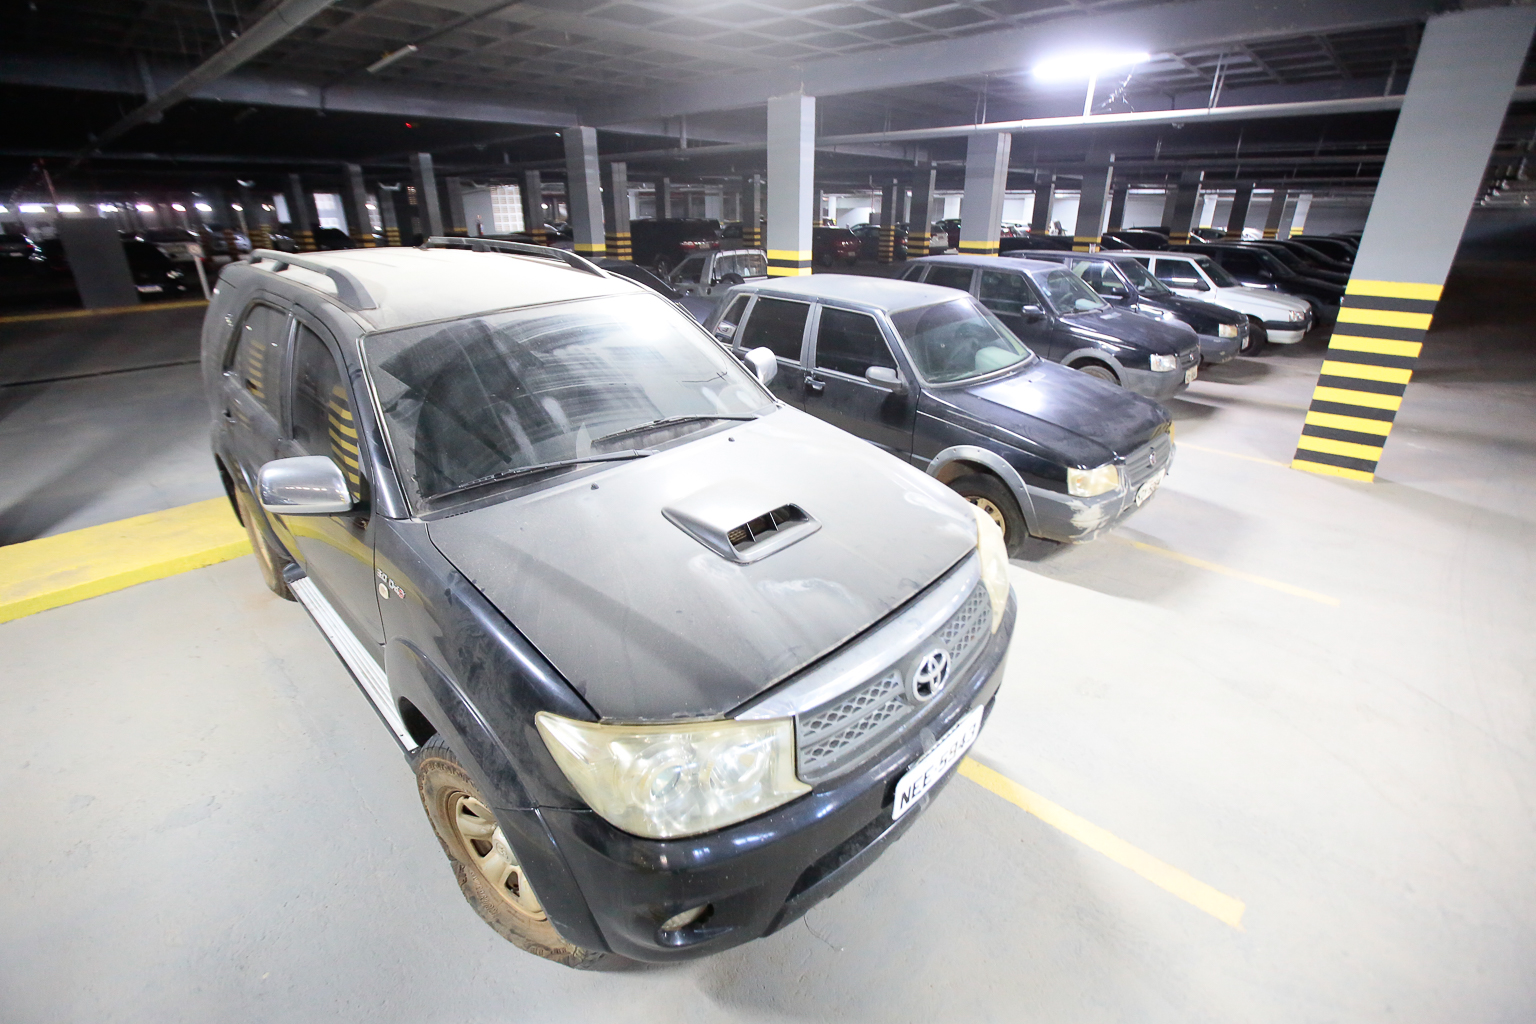 Assembleia Legislativa fará leilão de veículos, equipamentos e mobiliários - News Rondônia